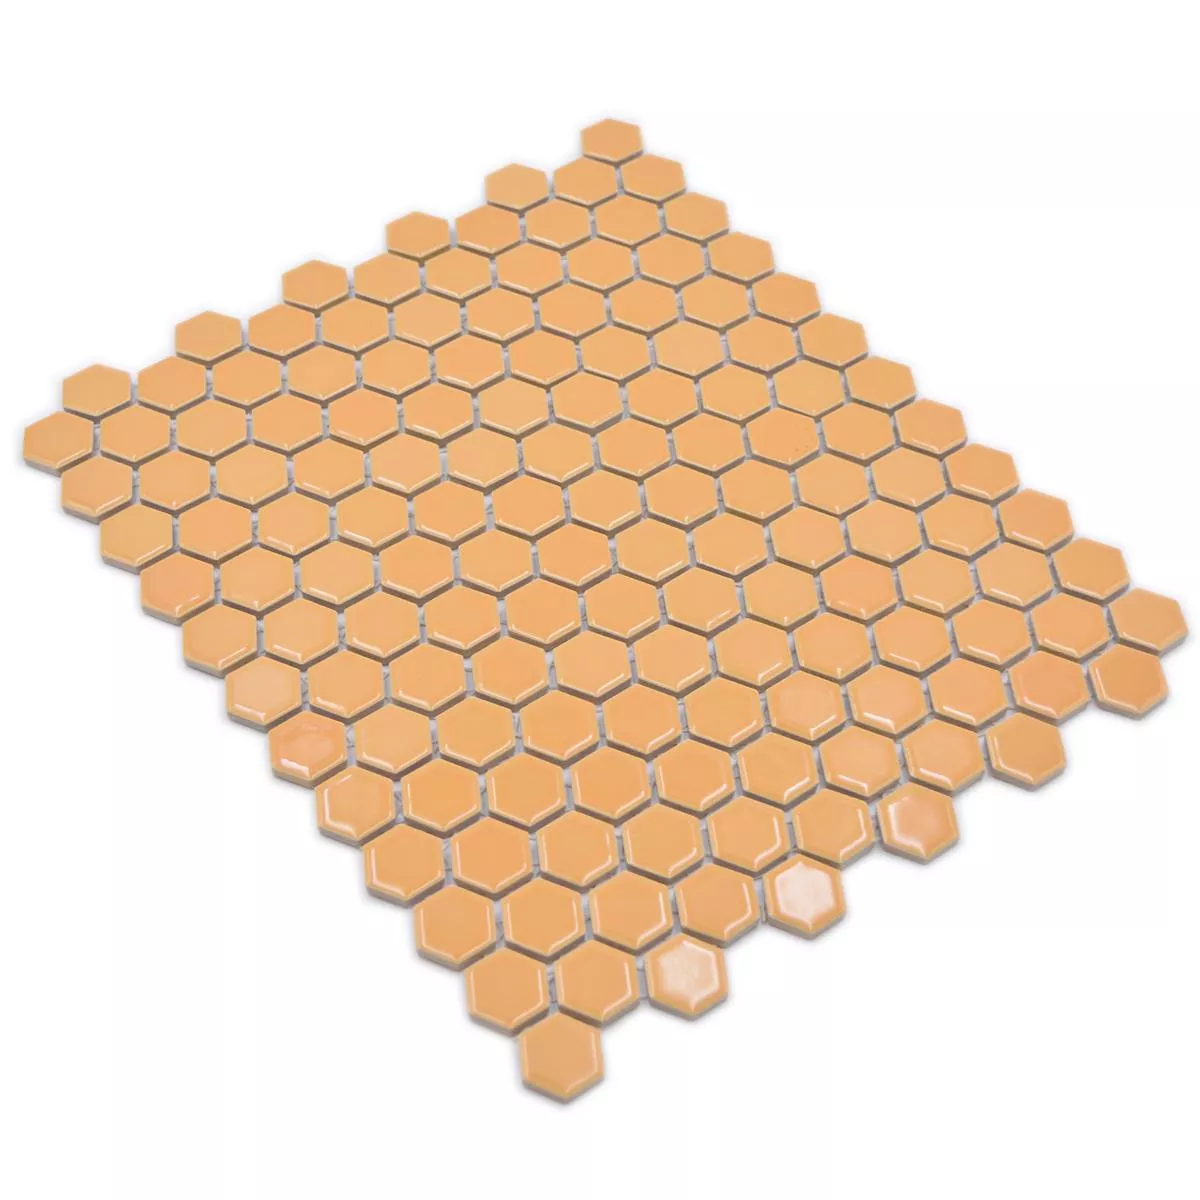 Keramikmosaik Salomon Hexagon Ockra Apelsin H23